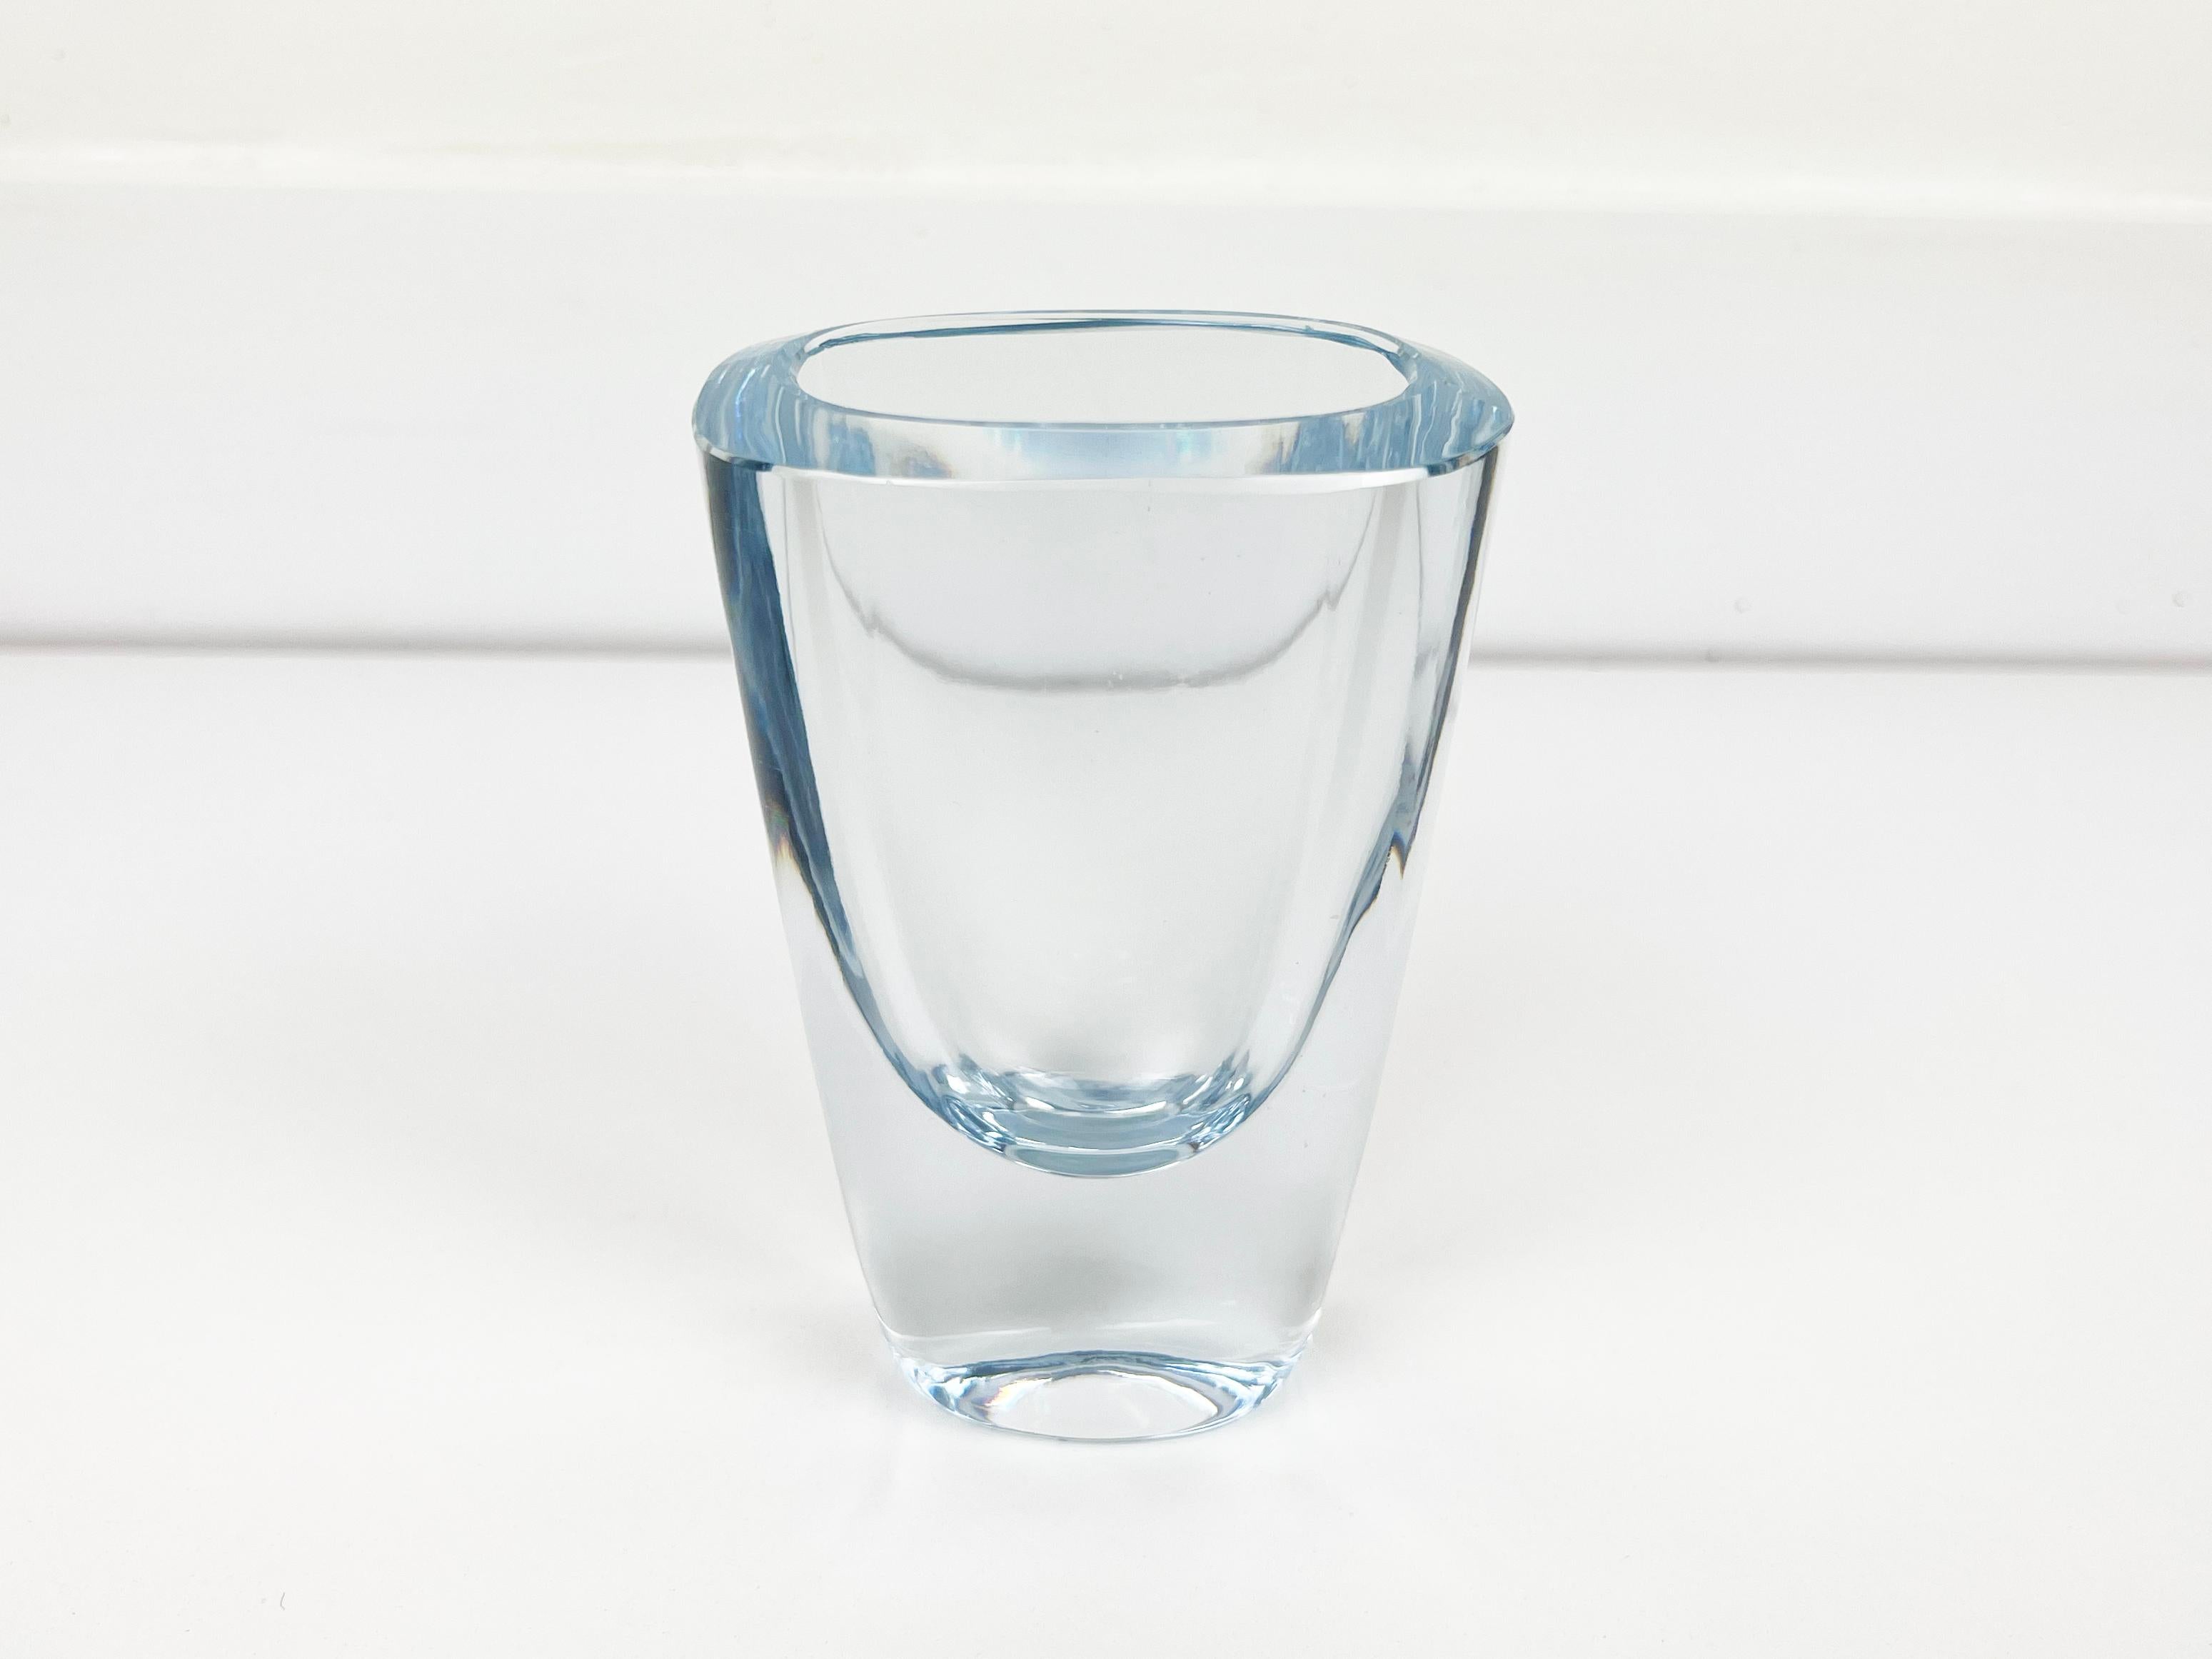 Vintage vase ovale en cristal bleu aqua fabriqué à la main par Strombergshyttan. Signé en bas. 

Artiste : Asta Stromberg

Fabricant : Strombergshyttan

Origine : Suède

Année : 1960

Dimensions : 5,5